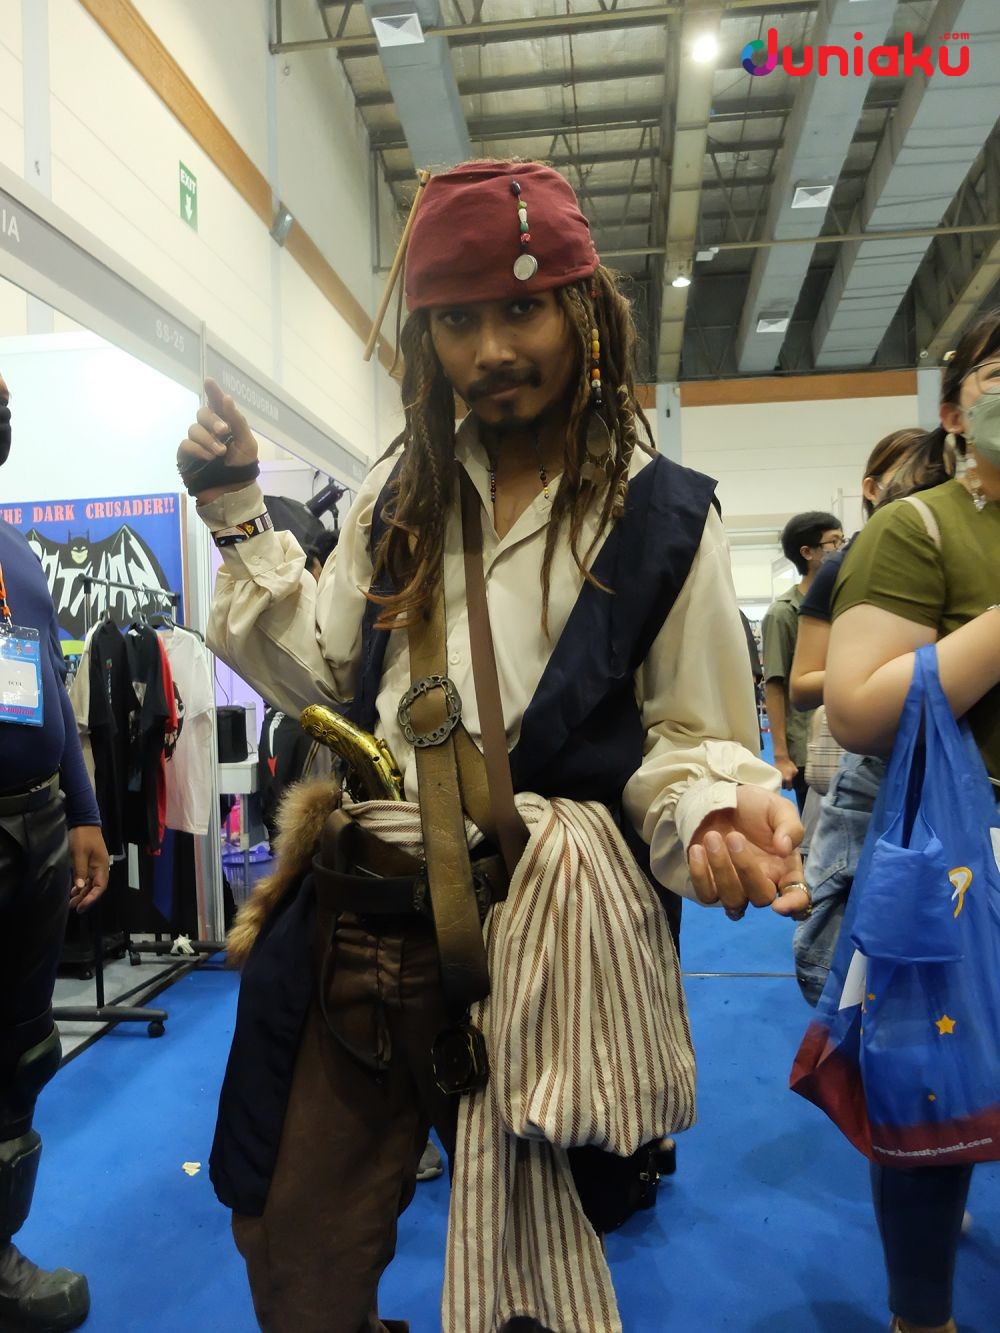 Jack Sparrow cosplay by Ryzky Ryz